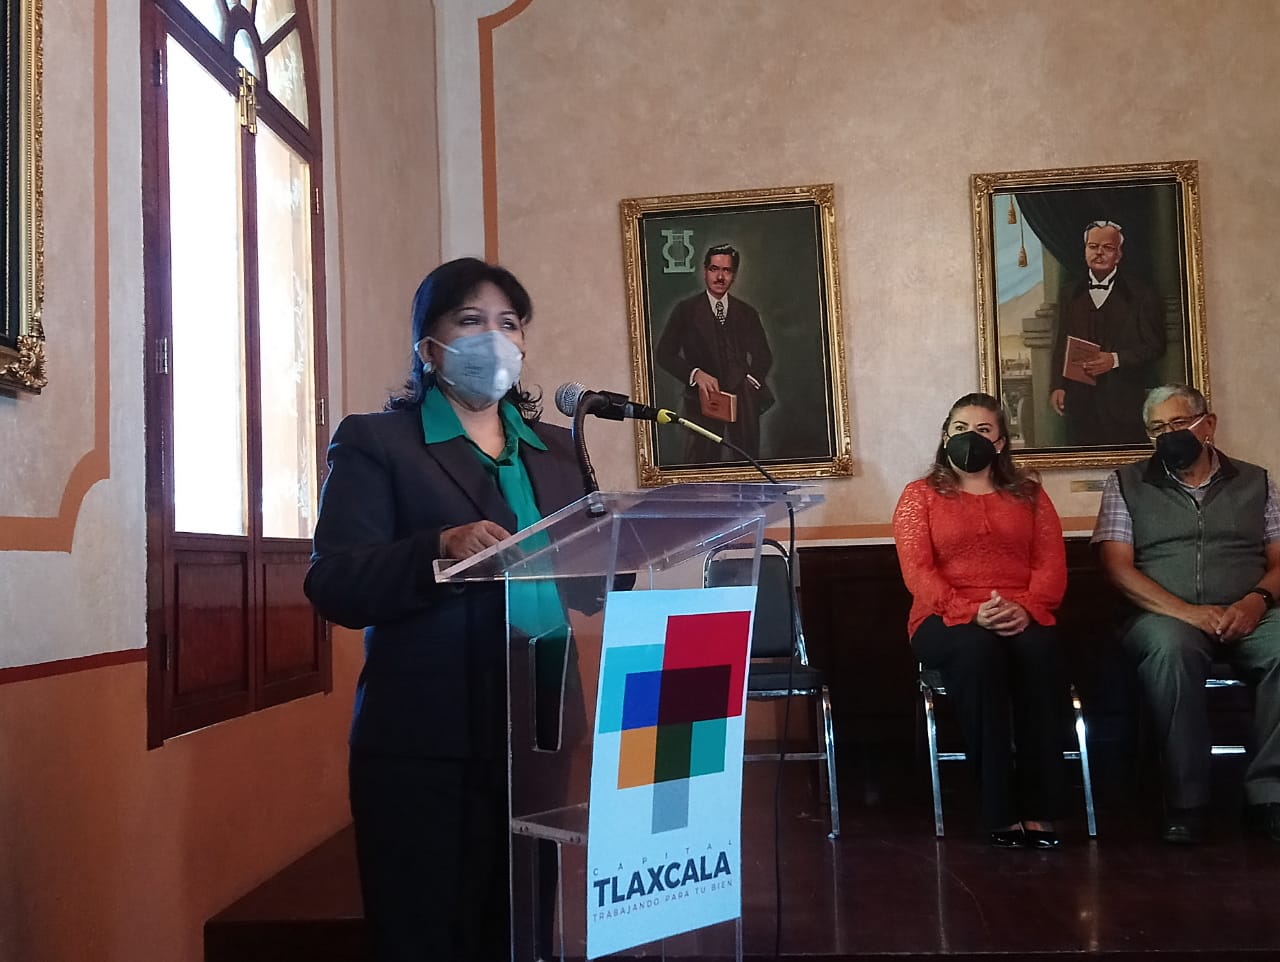 La celebración del 495 aniversario de Tlaxcala será virtual: Alcaldesa